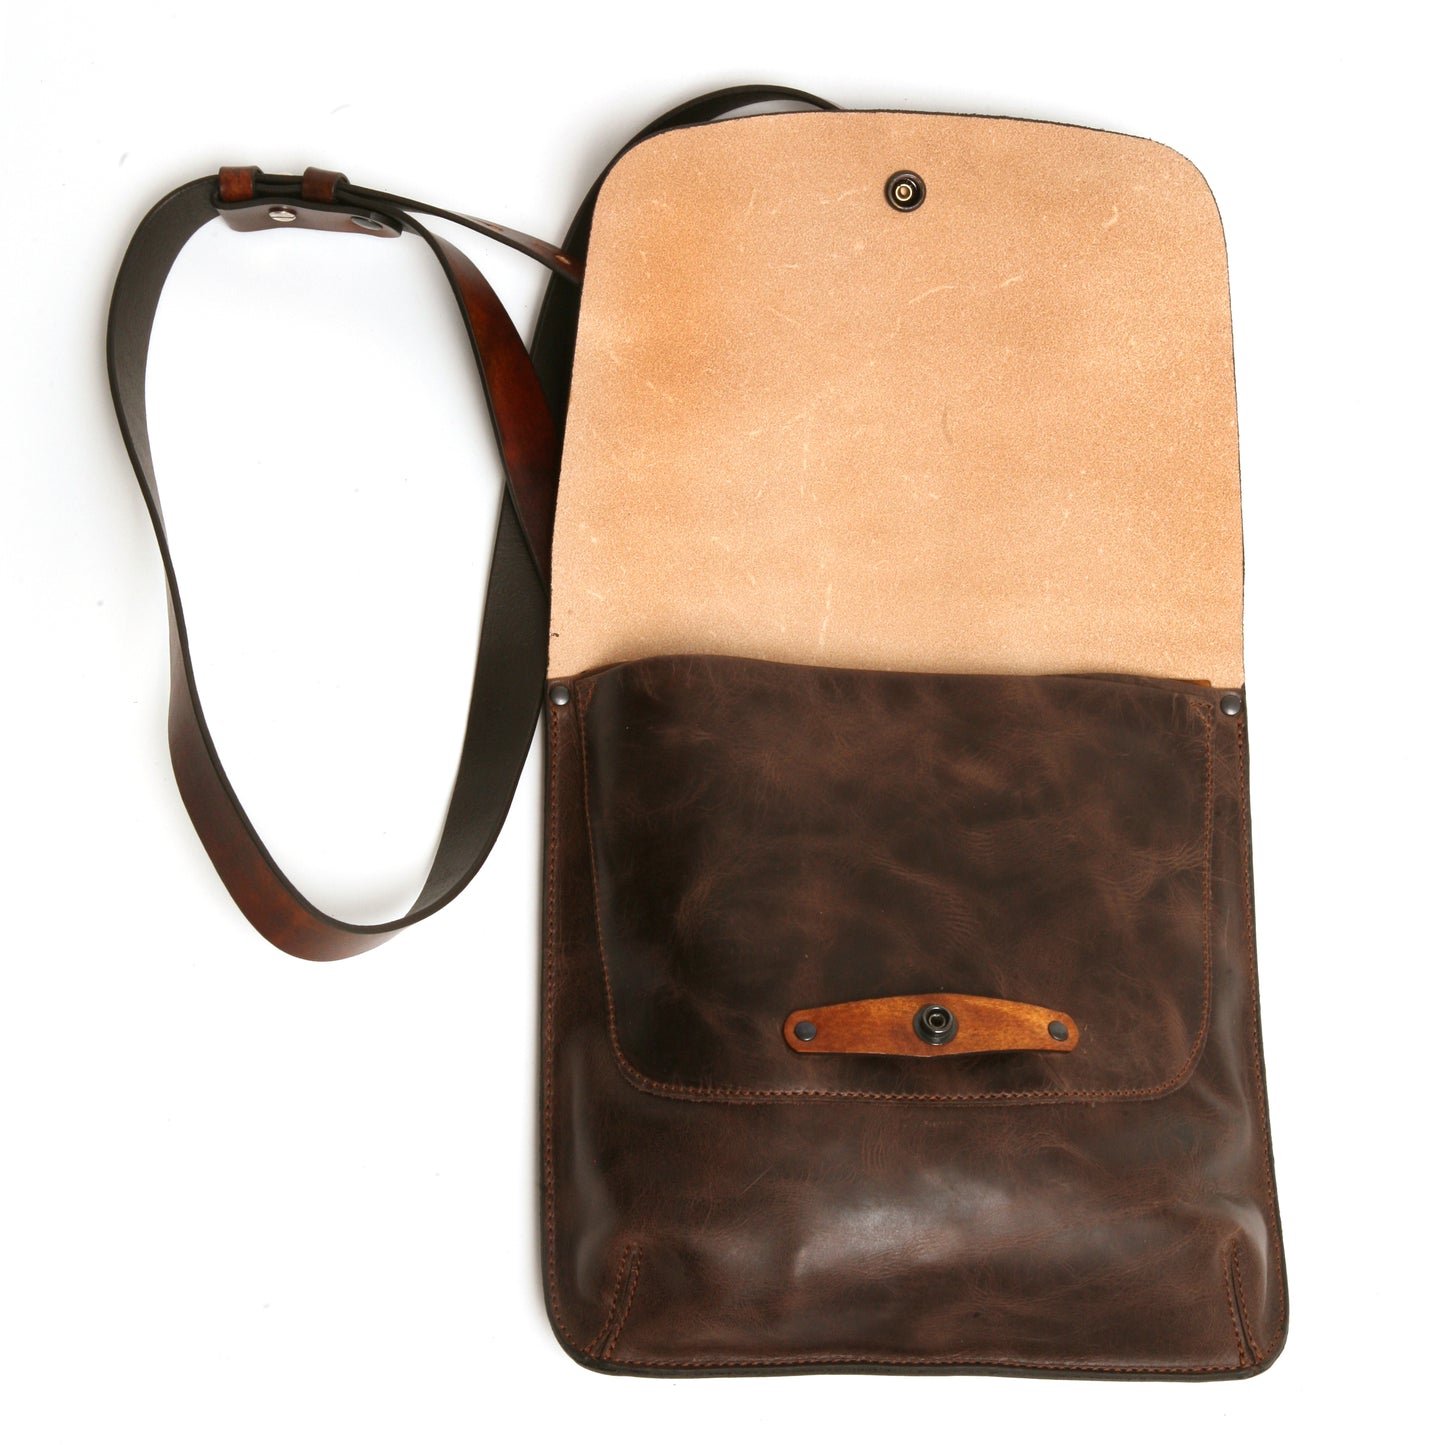 ROSCO satchel vintage Tan&Dark Brown